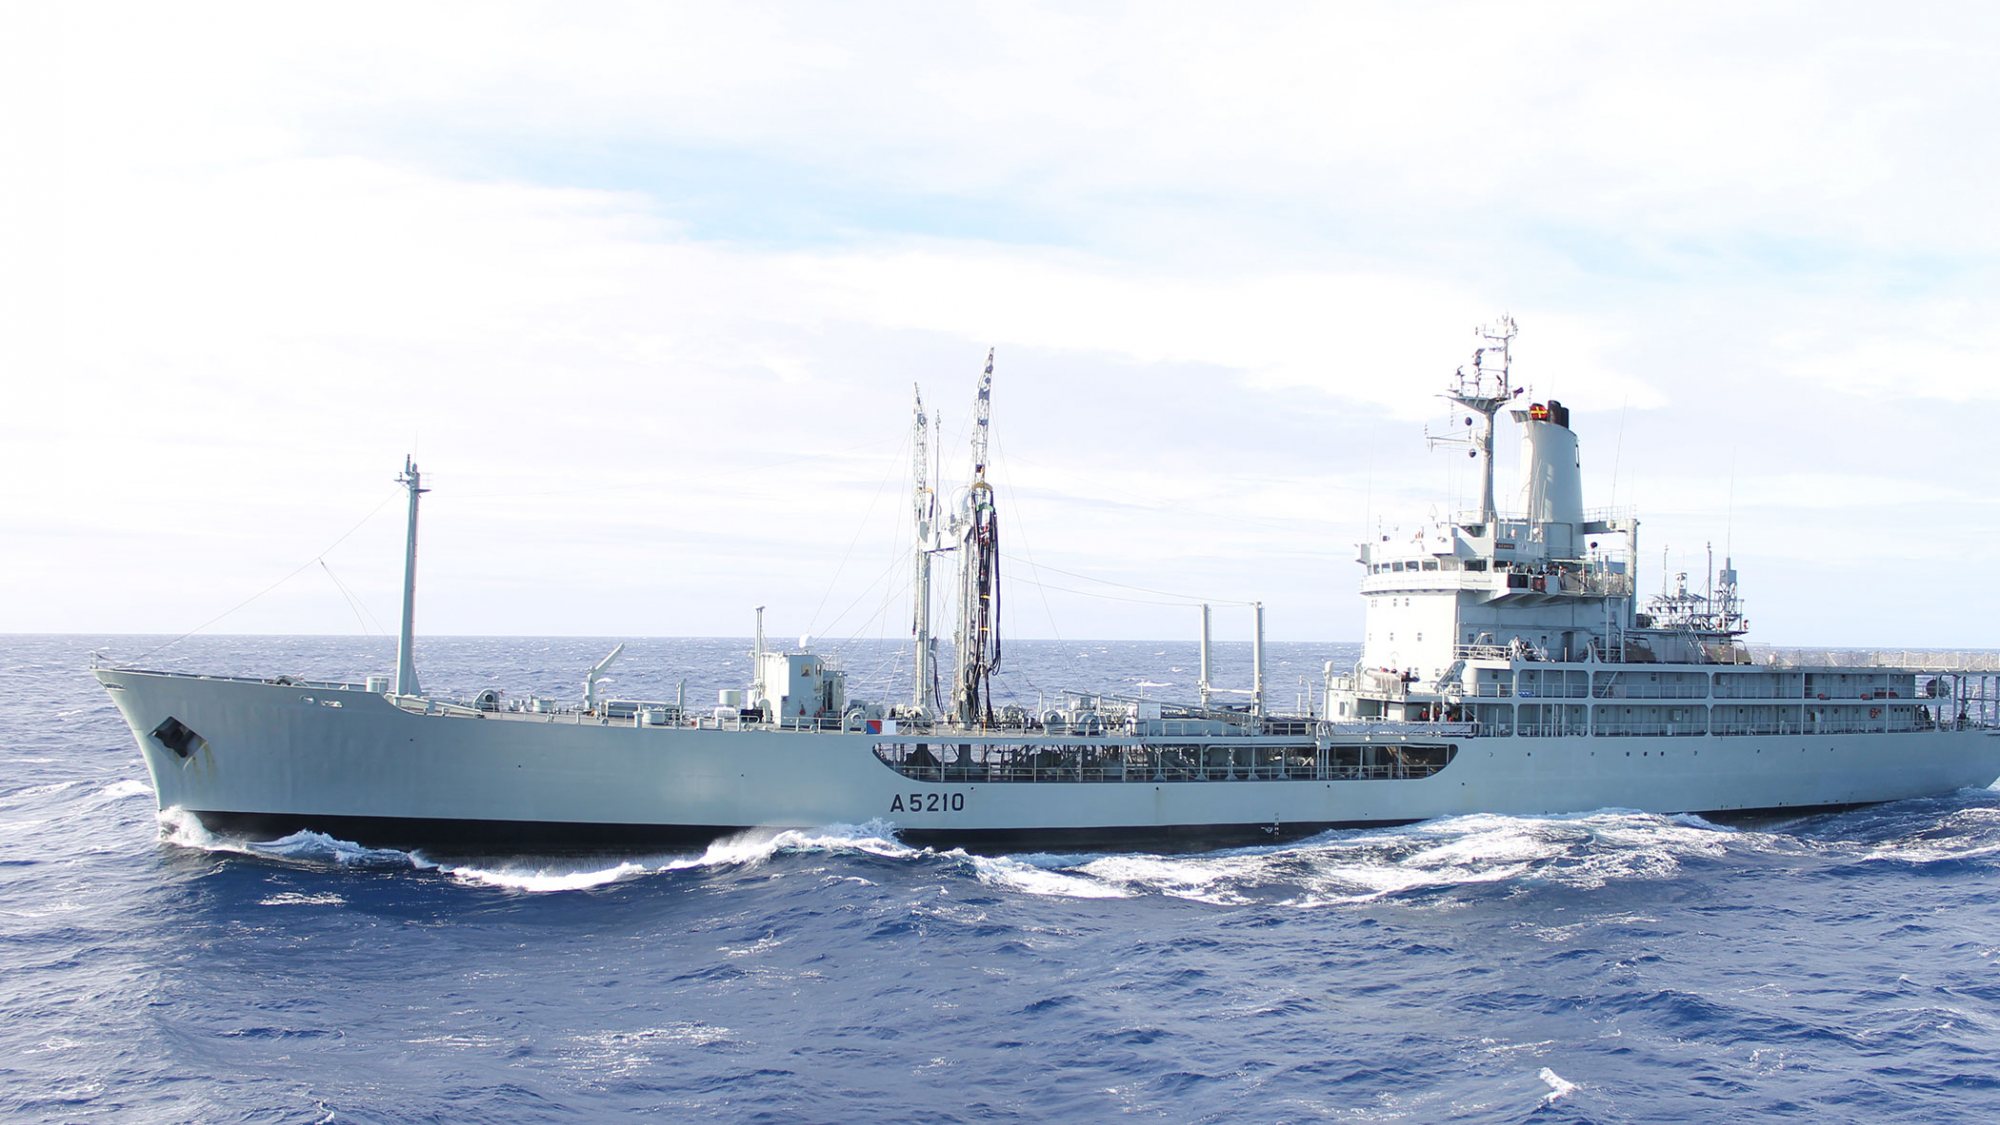 O navio reabastecedor Bérrio, o único ao serviço da Marinha portuguesa, foi mandado abater em janeiro de 2020 pelo anterior Chefe do Estado-Maior da Armada